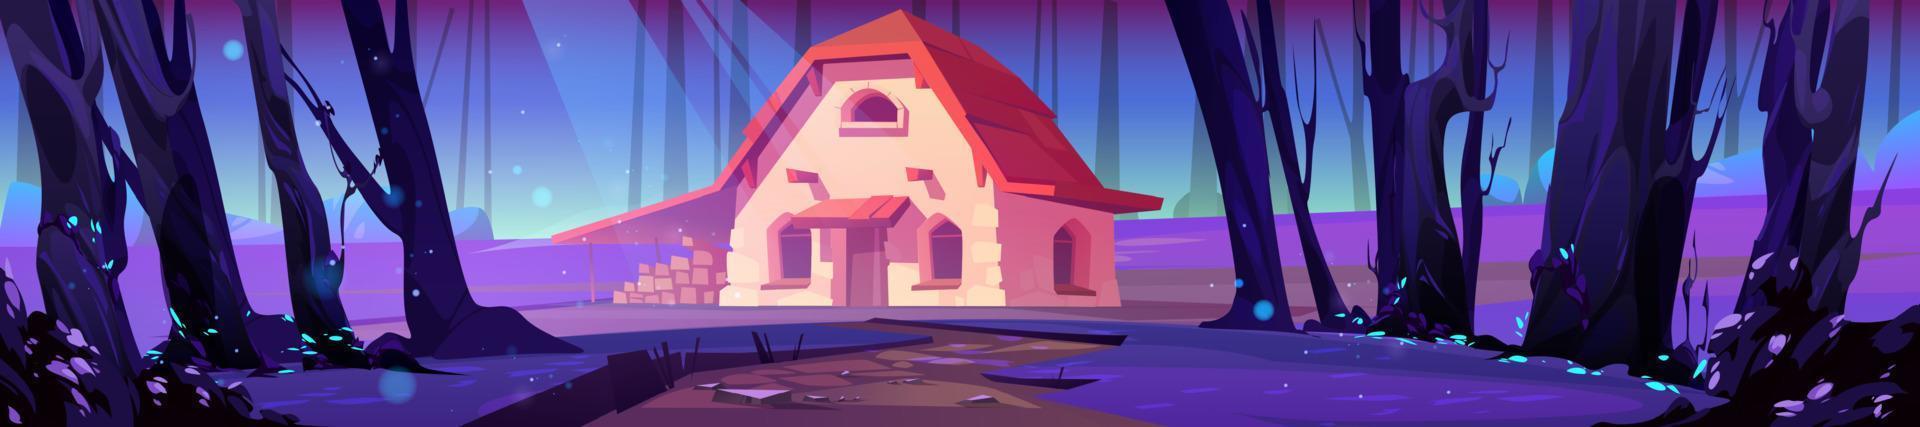 casa de campo en el bosque nocturno, escena del juego 2d de la casa de piedra vector